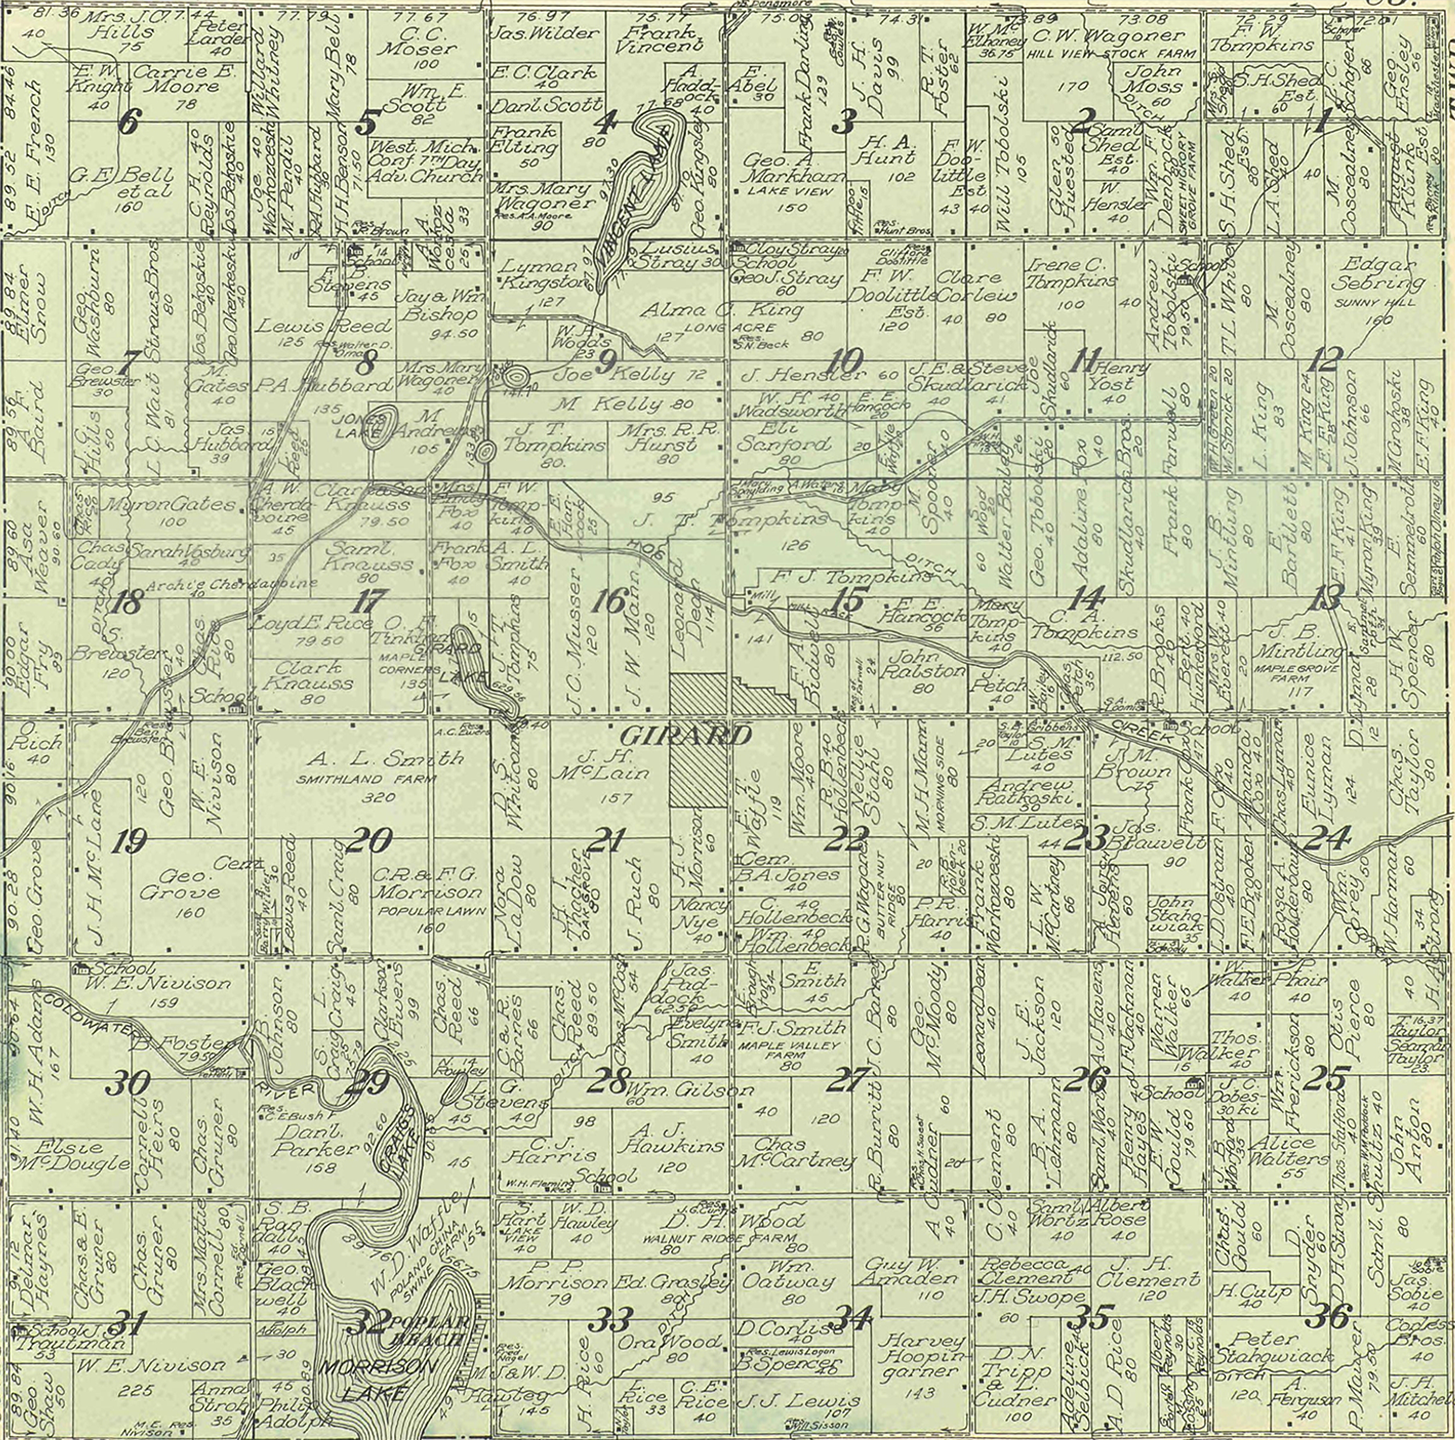 1915 Girard Township, Michigan landownership map